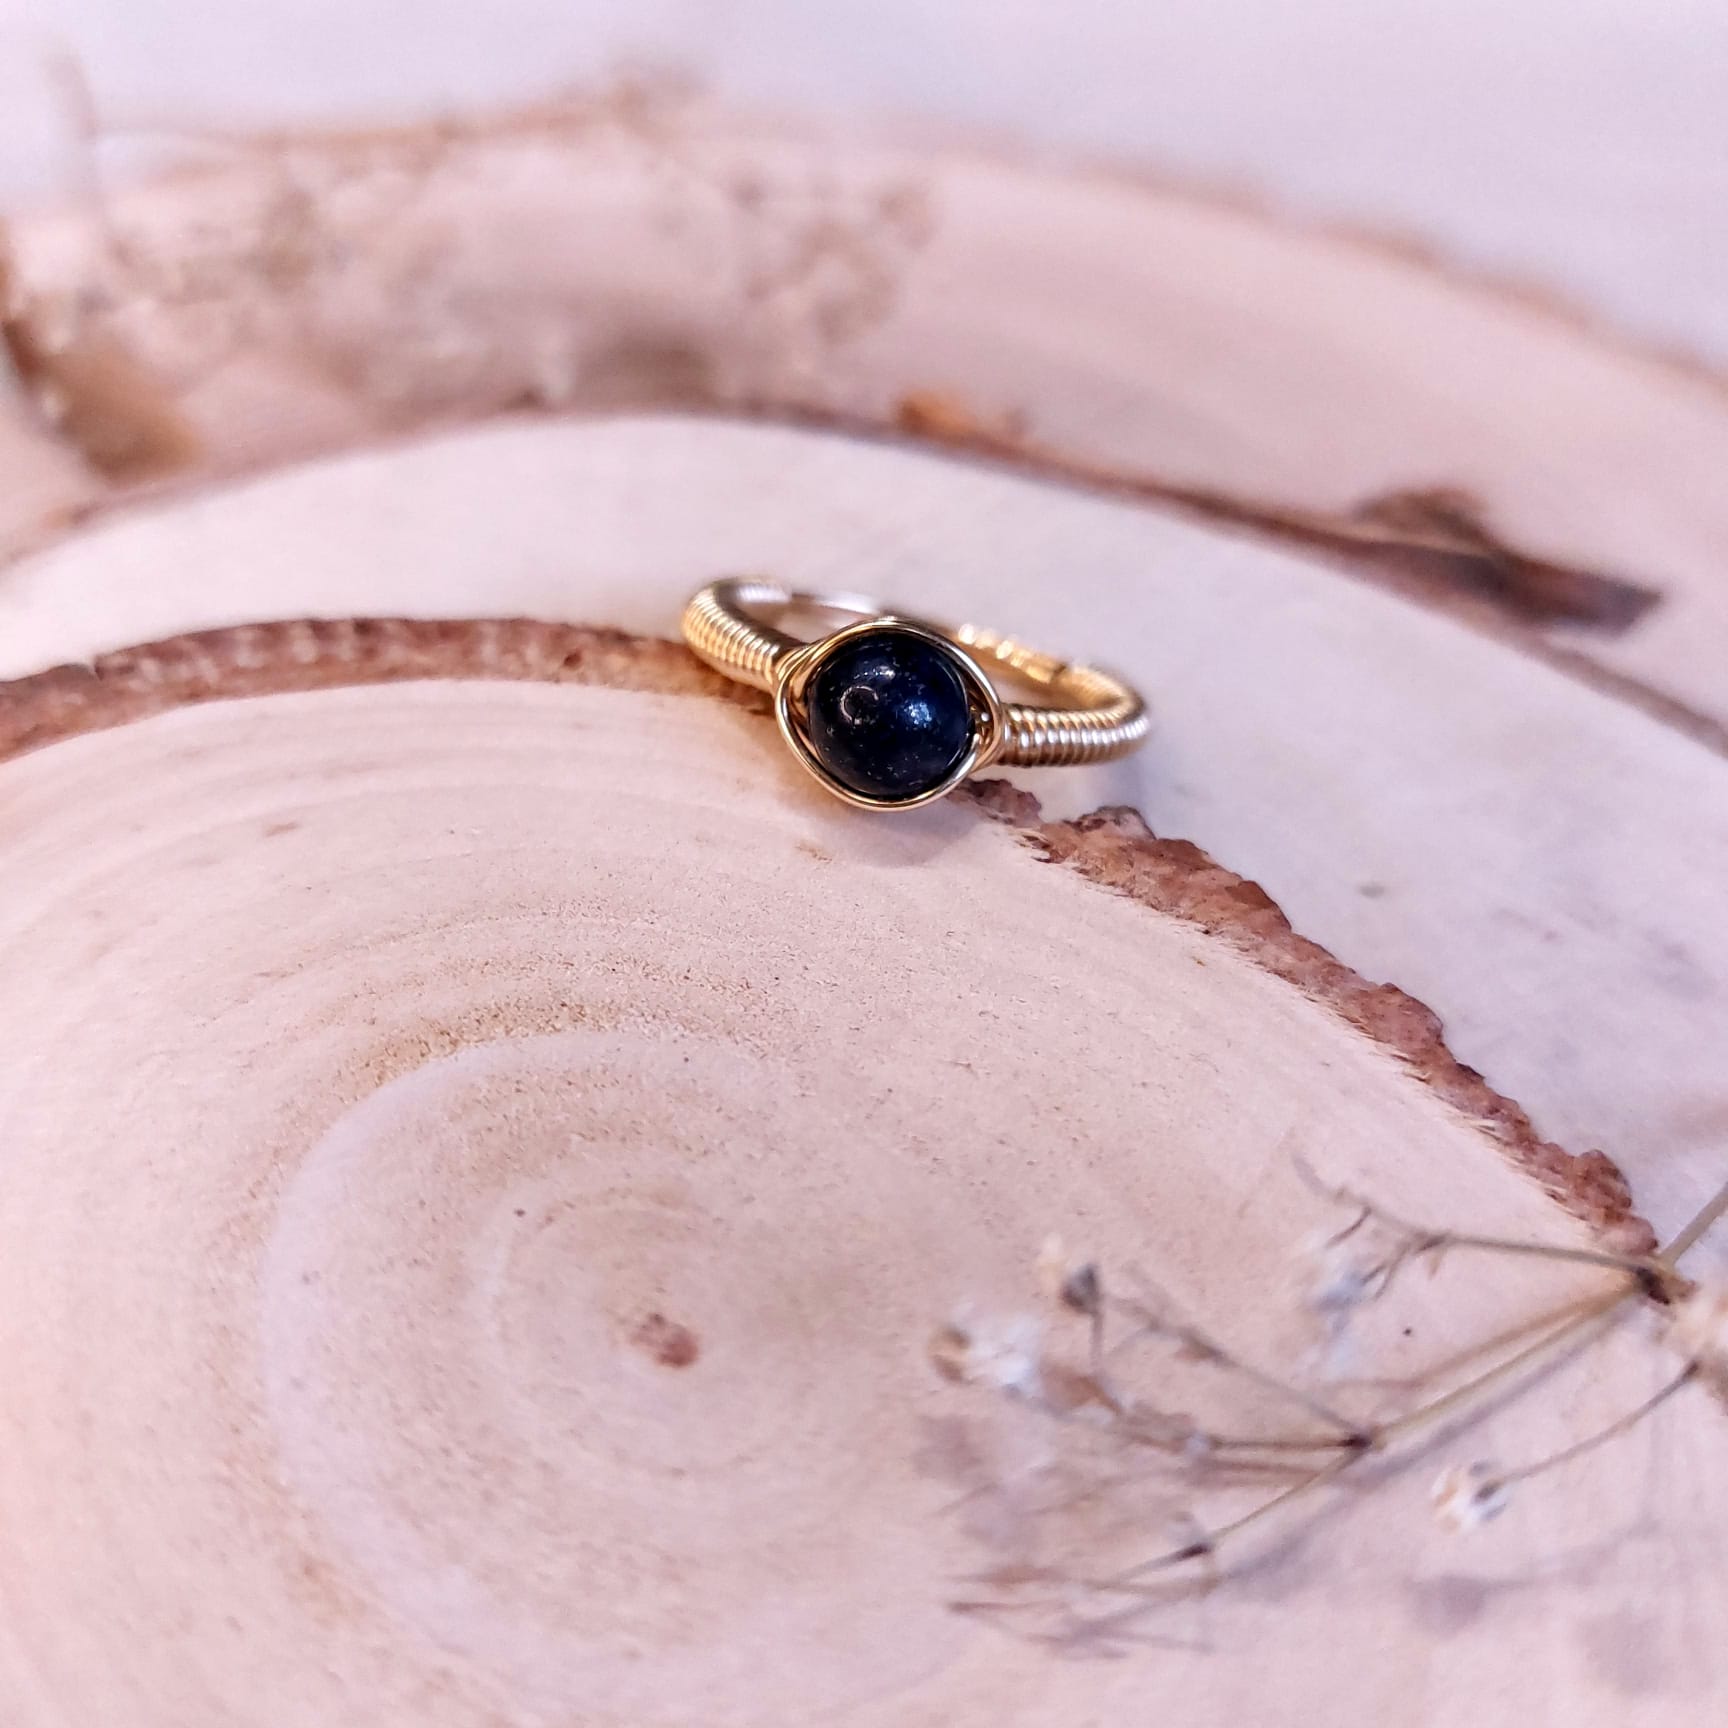 Na zdjęciu widać pierścionek z kamieniem - lapis lazuli